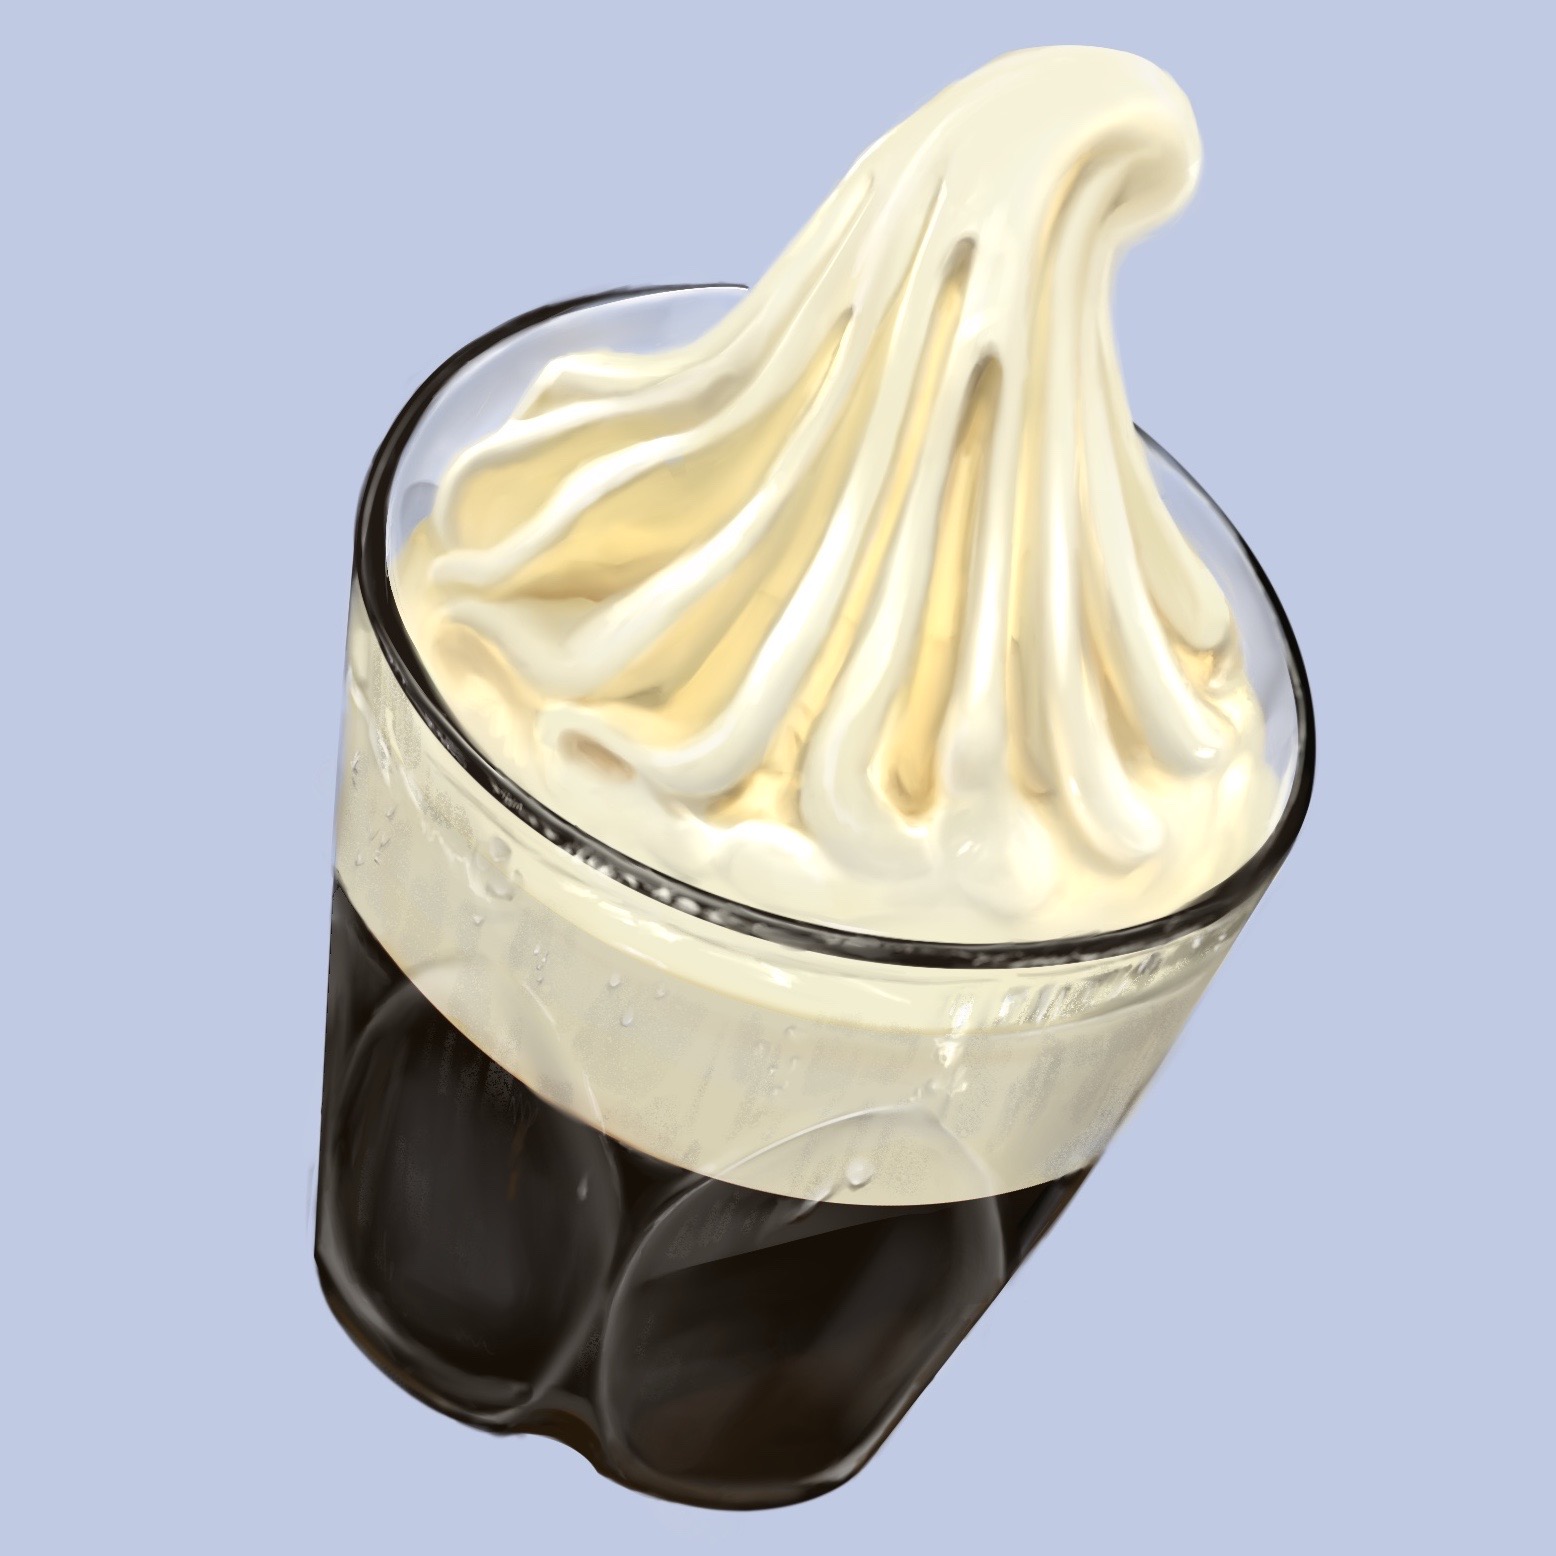 【吃畫食堂】Cafe nota nova @中野 : 自家製咖啡凍加CREMIA霜淇淋